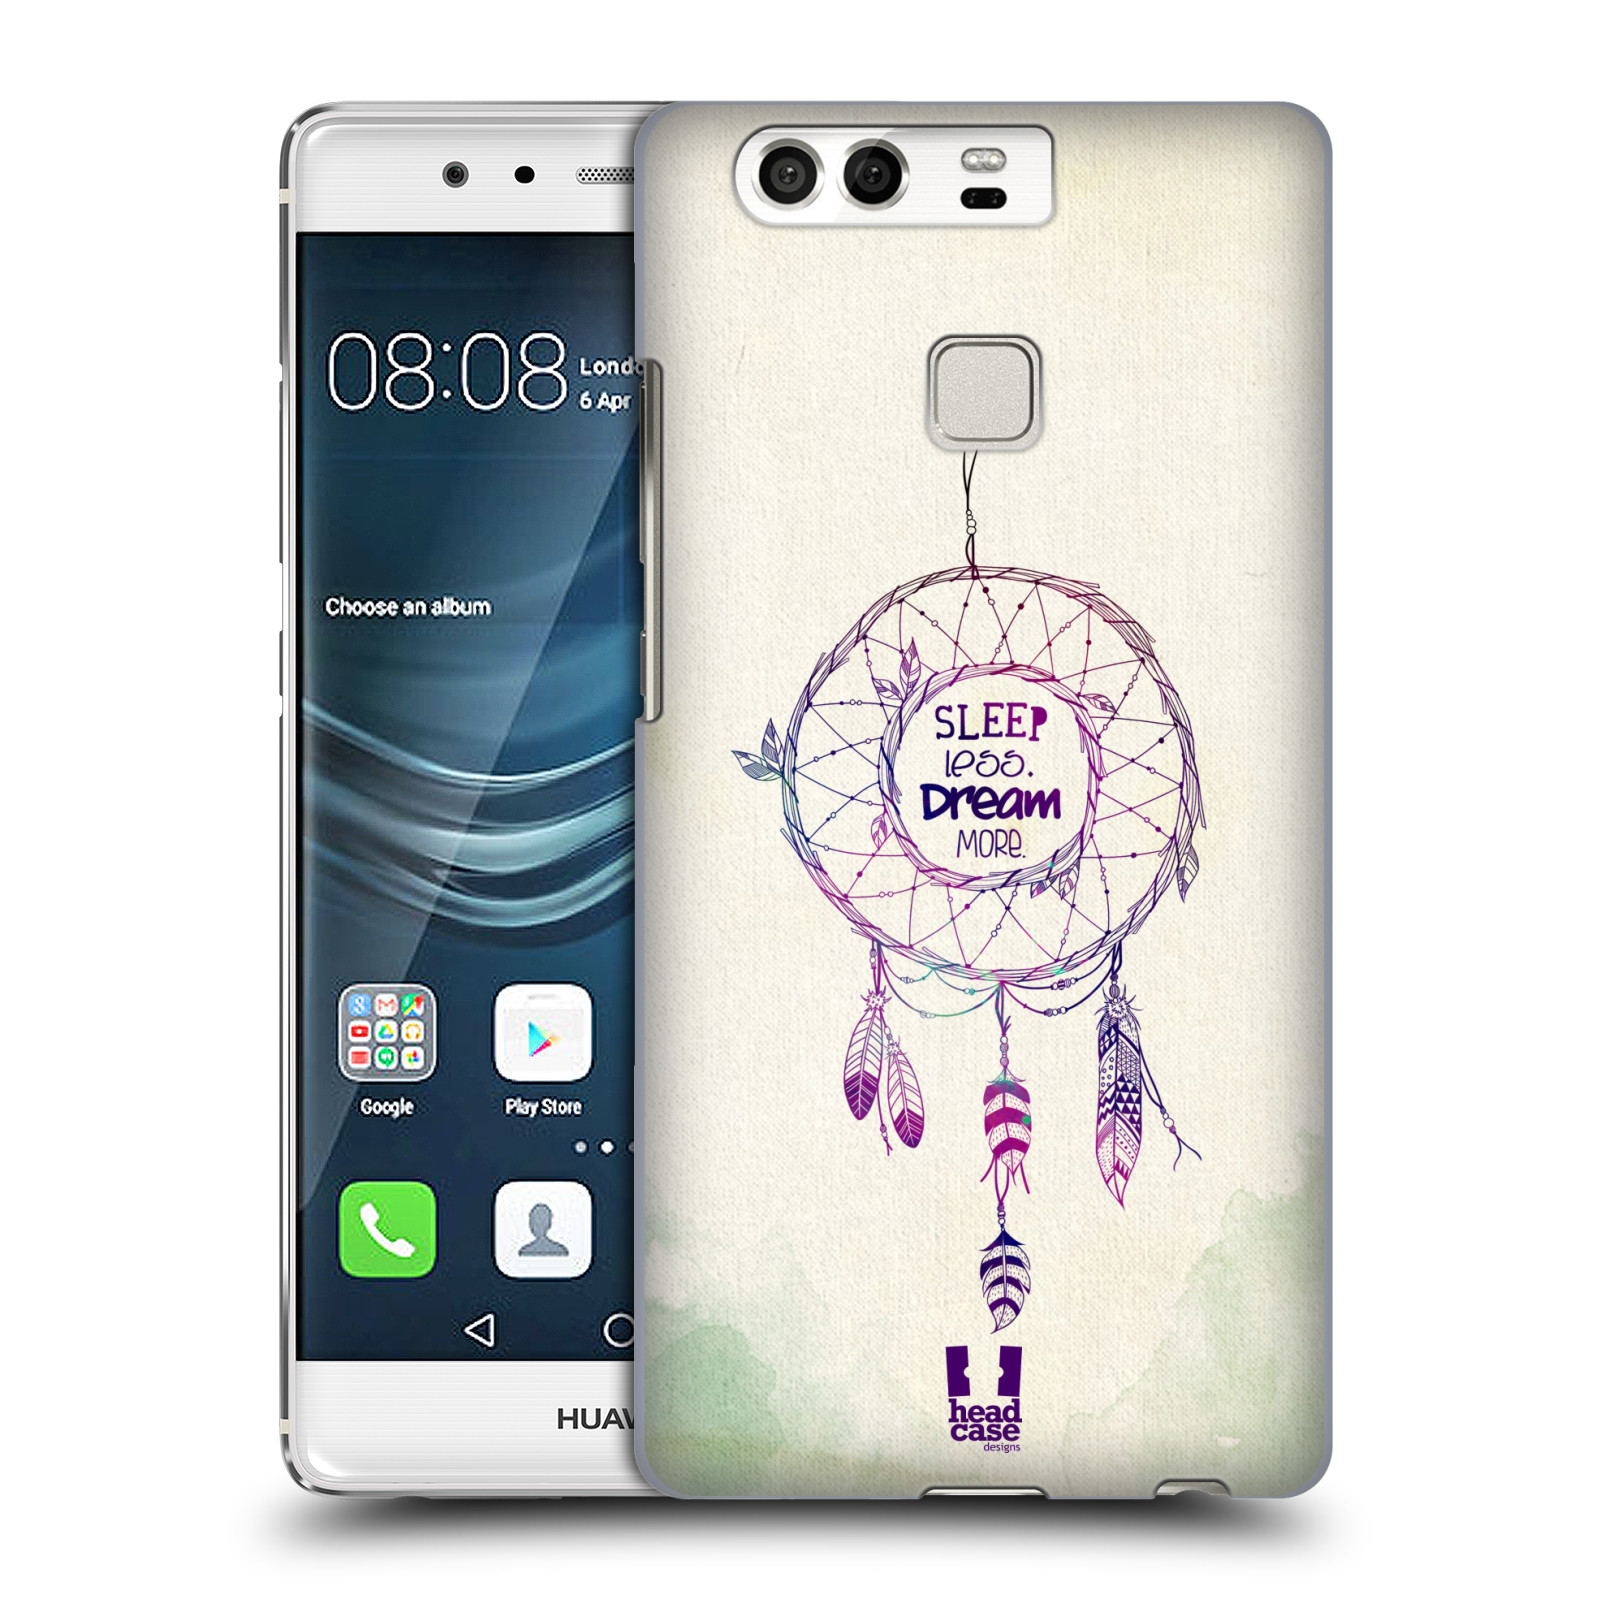 HEAD CASE plastový obal na mobil Huawei P9 / P9 DUAL SIM vzor Lapač snů ZELENÁ A FIALOVÁ